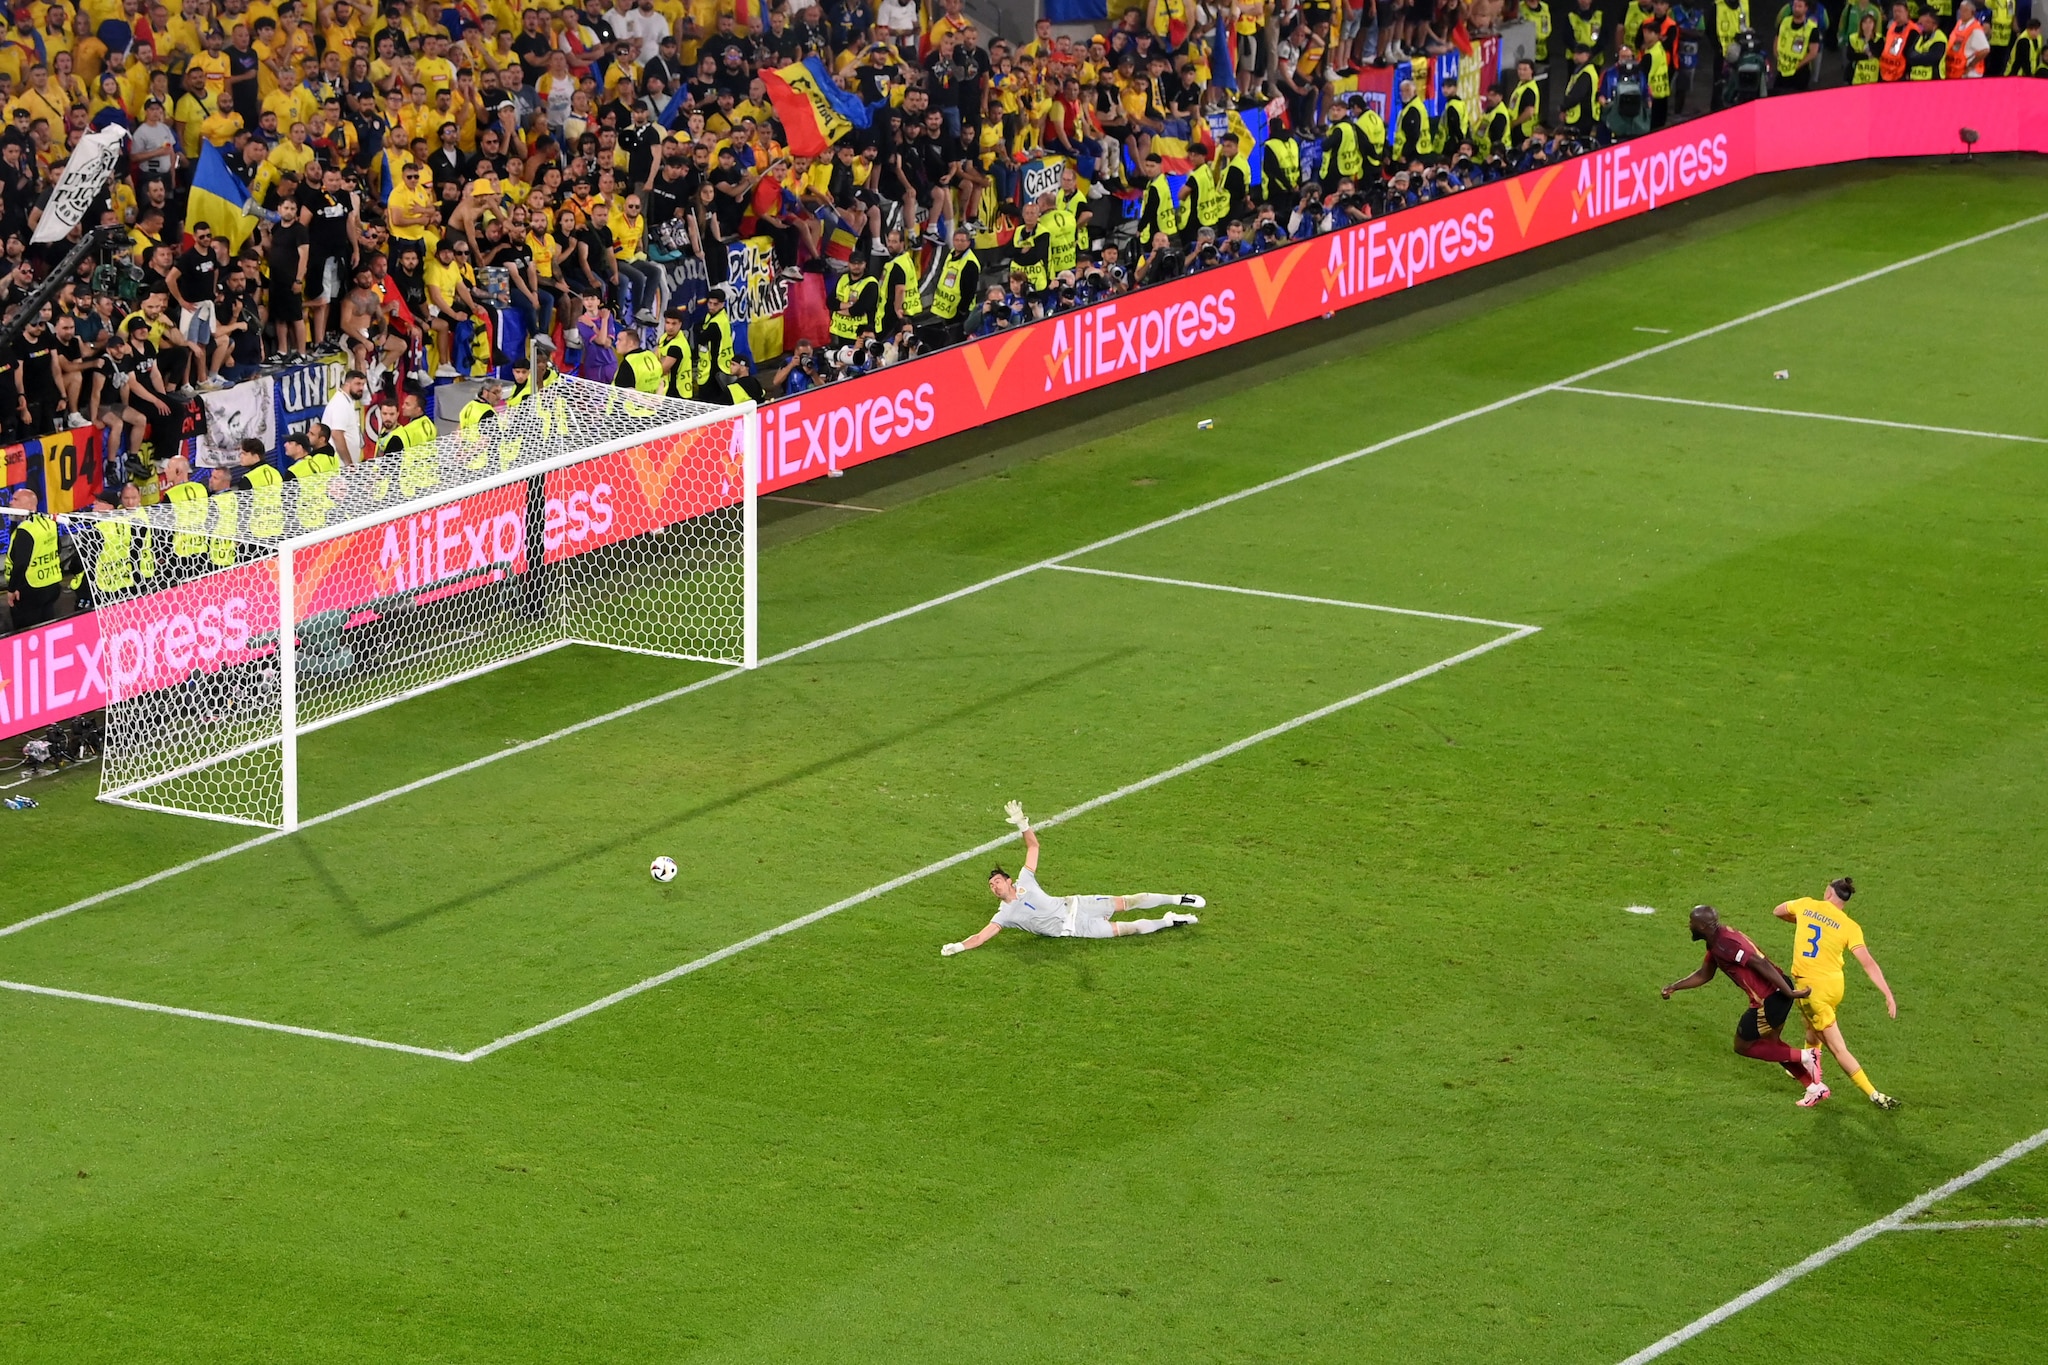 Il momento in cui Lukaku mette a segno il gol poi annullato dall'arbitro.